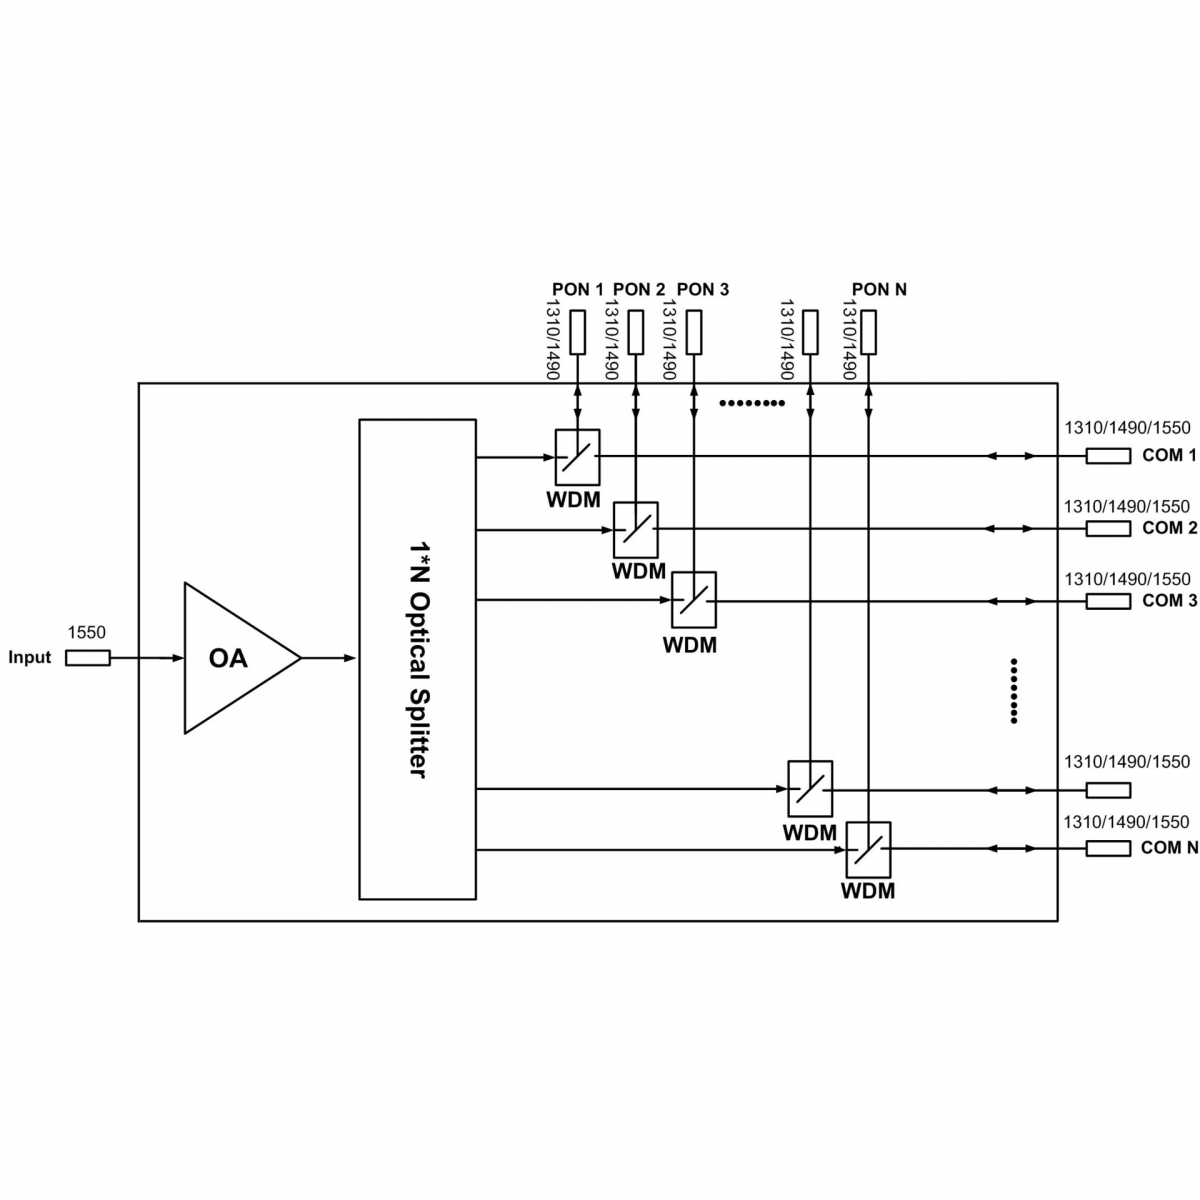 Оптический усилитель VERMAX для сетей КТВ, 8*24dBm, WDM фильтр PON